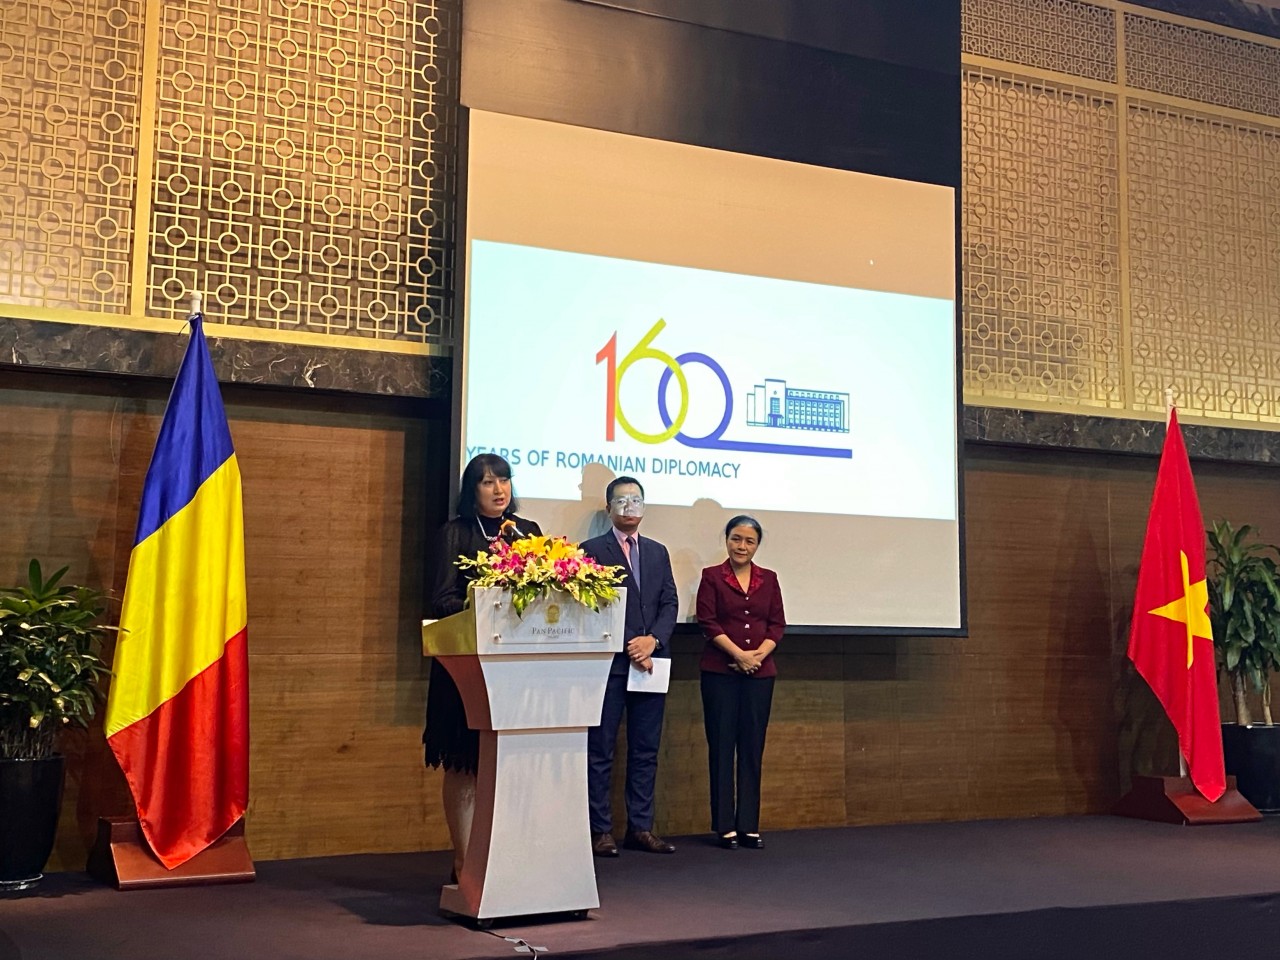 Tăng cường thúc đẩy quan hệ ngoại giao Việt Nam - Rumani